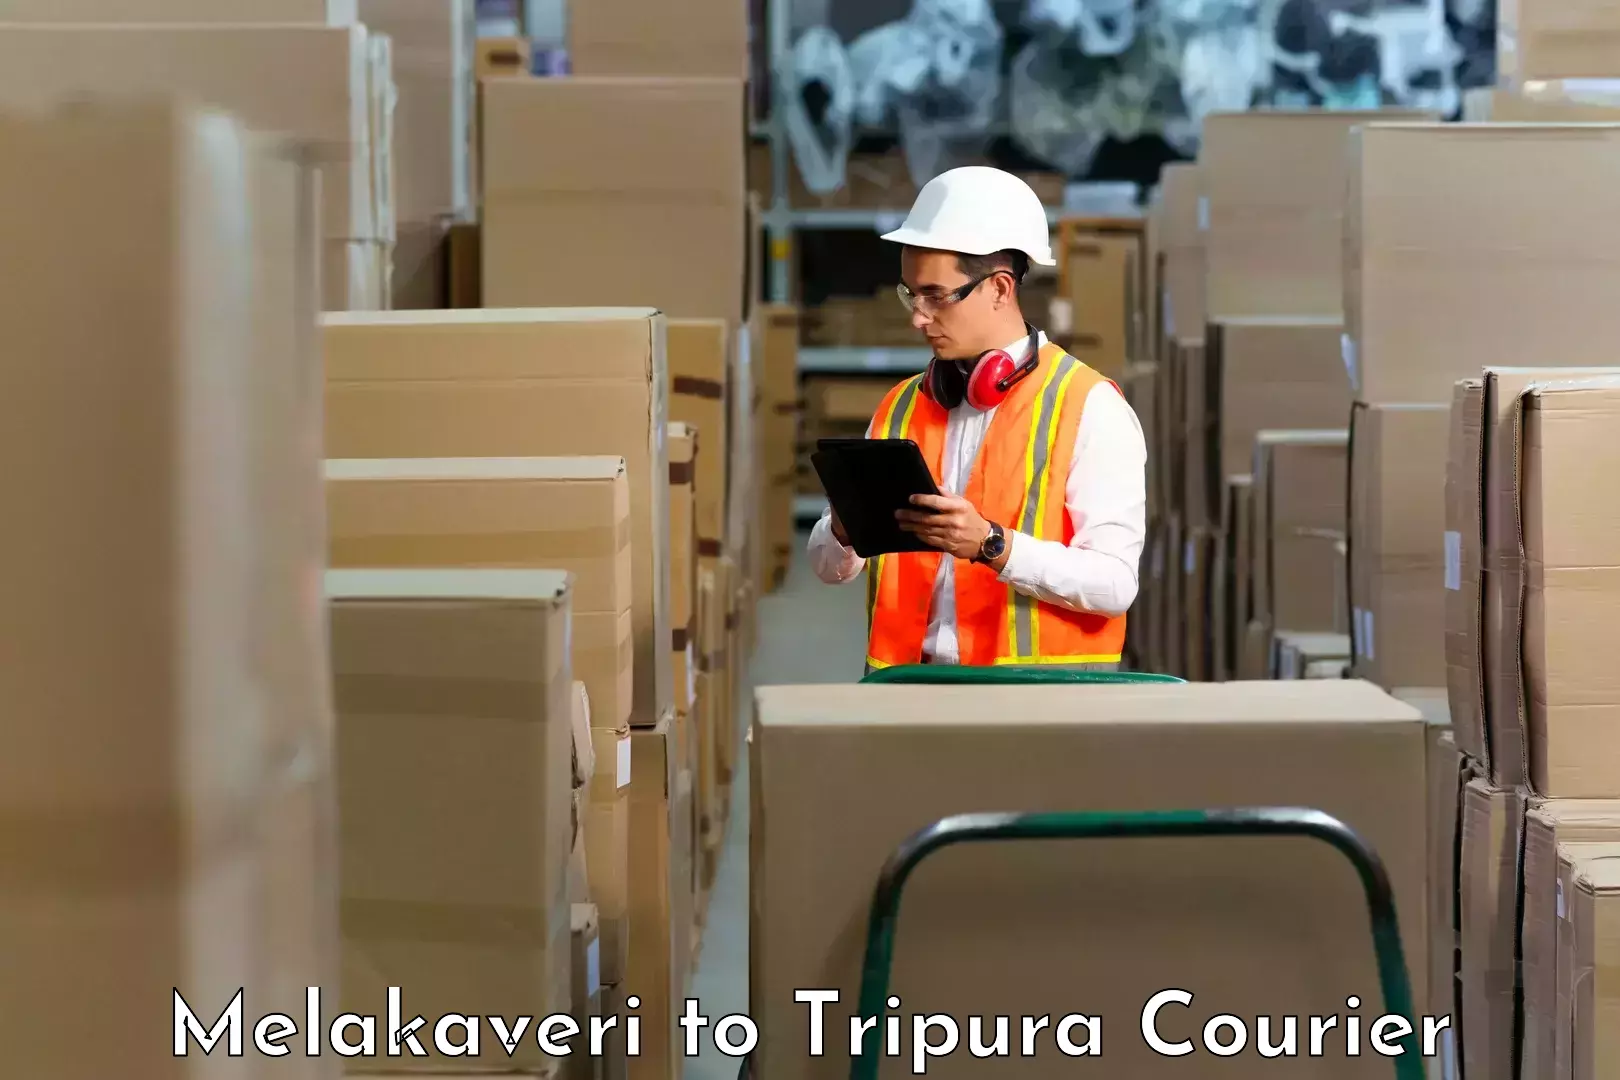 Ground shipping Melakaveri to IIIT Agartala